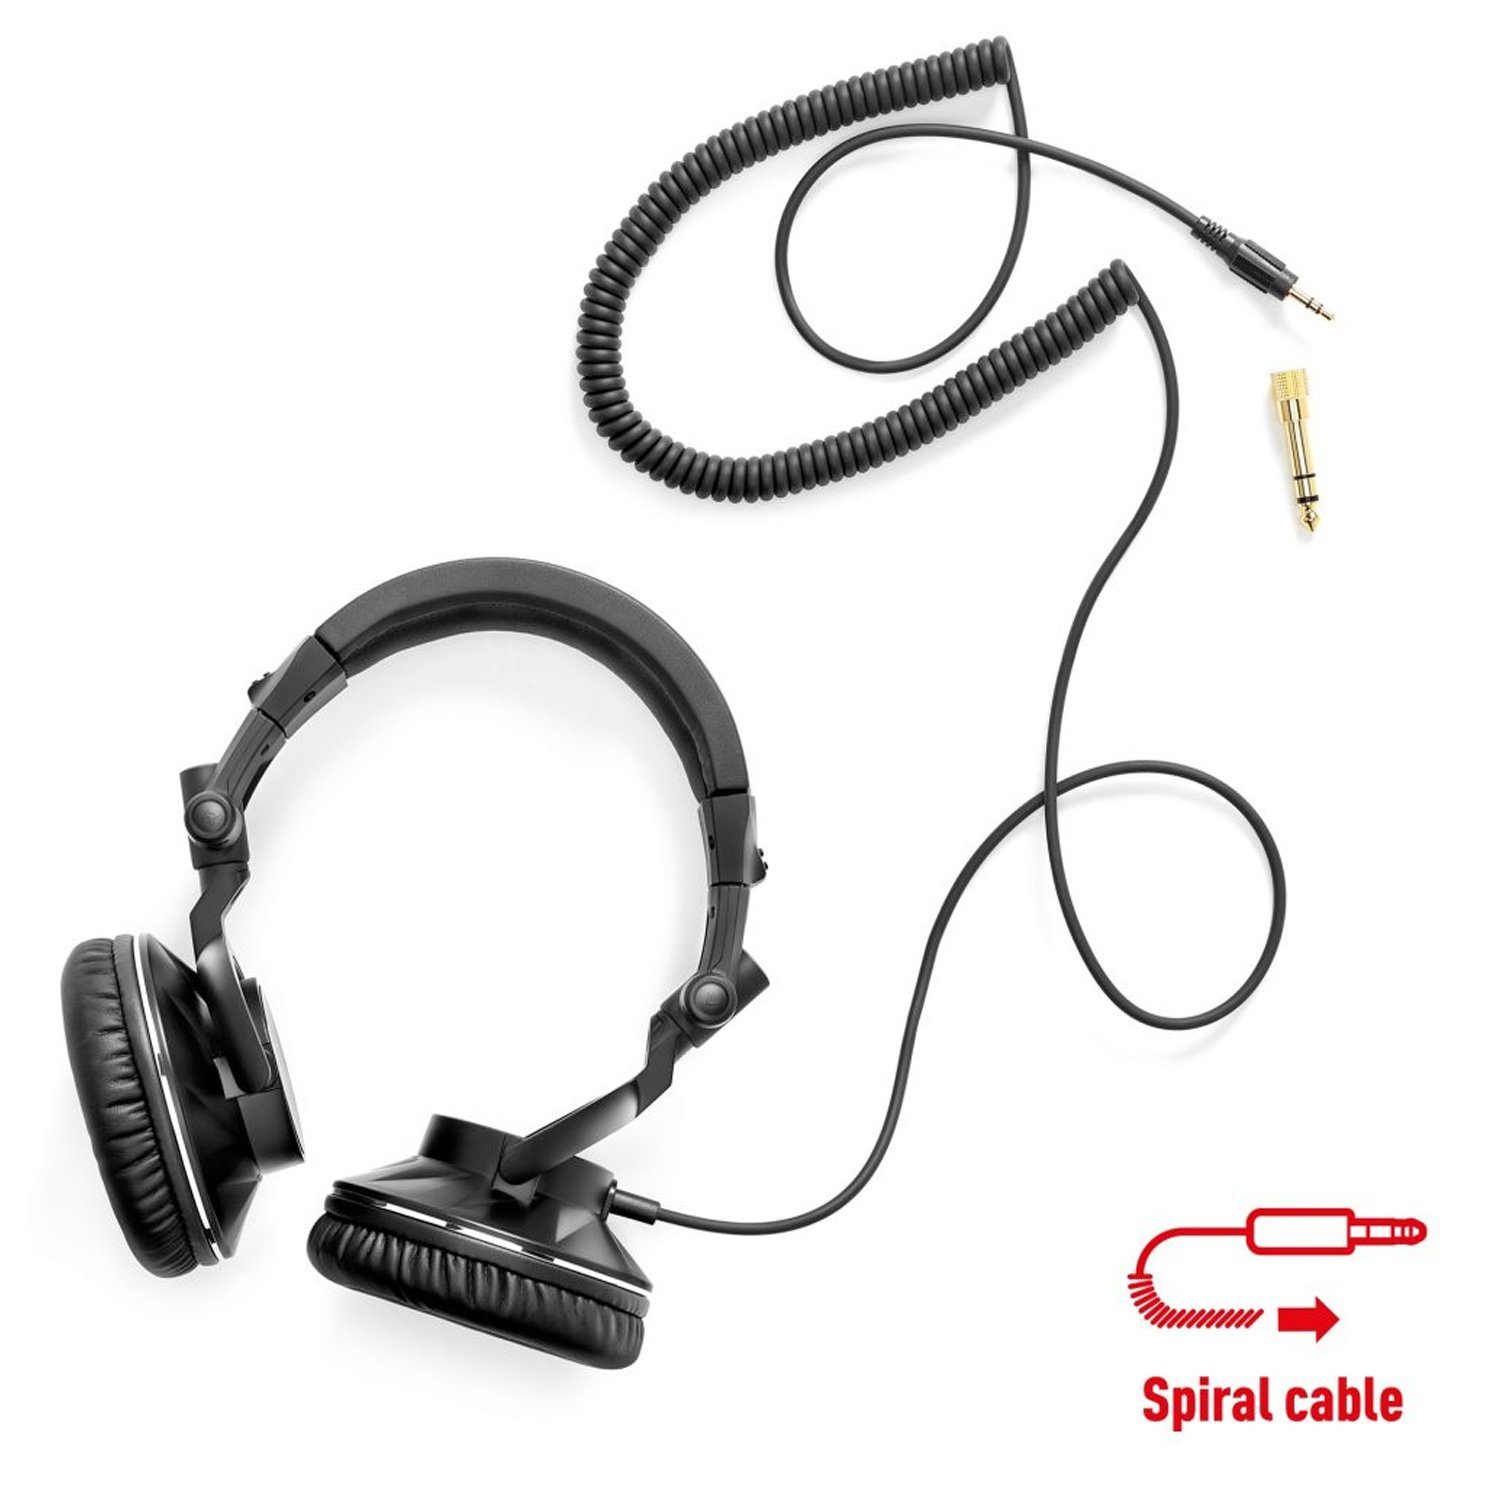 HERCULES HDP DJ60 Geschlossener -, Kabelgebunden) DJ-Kopfhörer (Geräuschisolierung